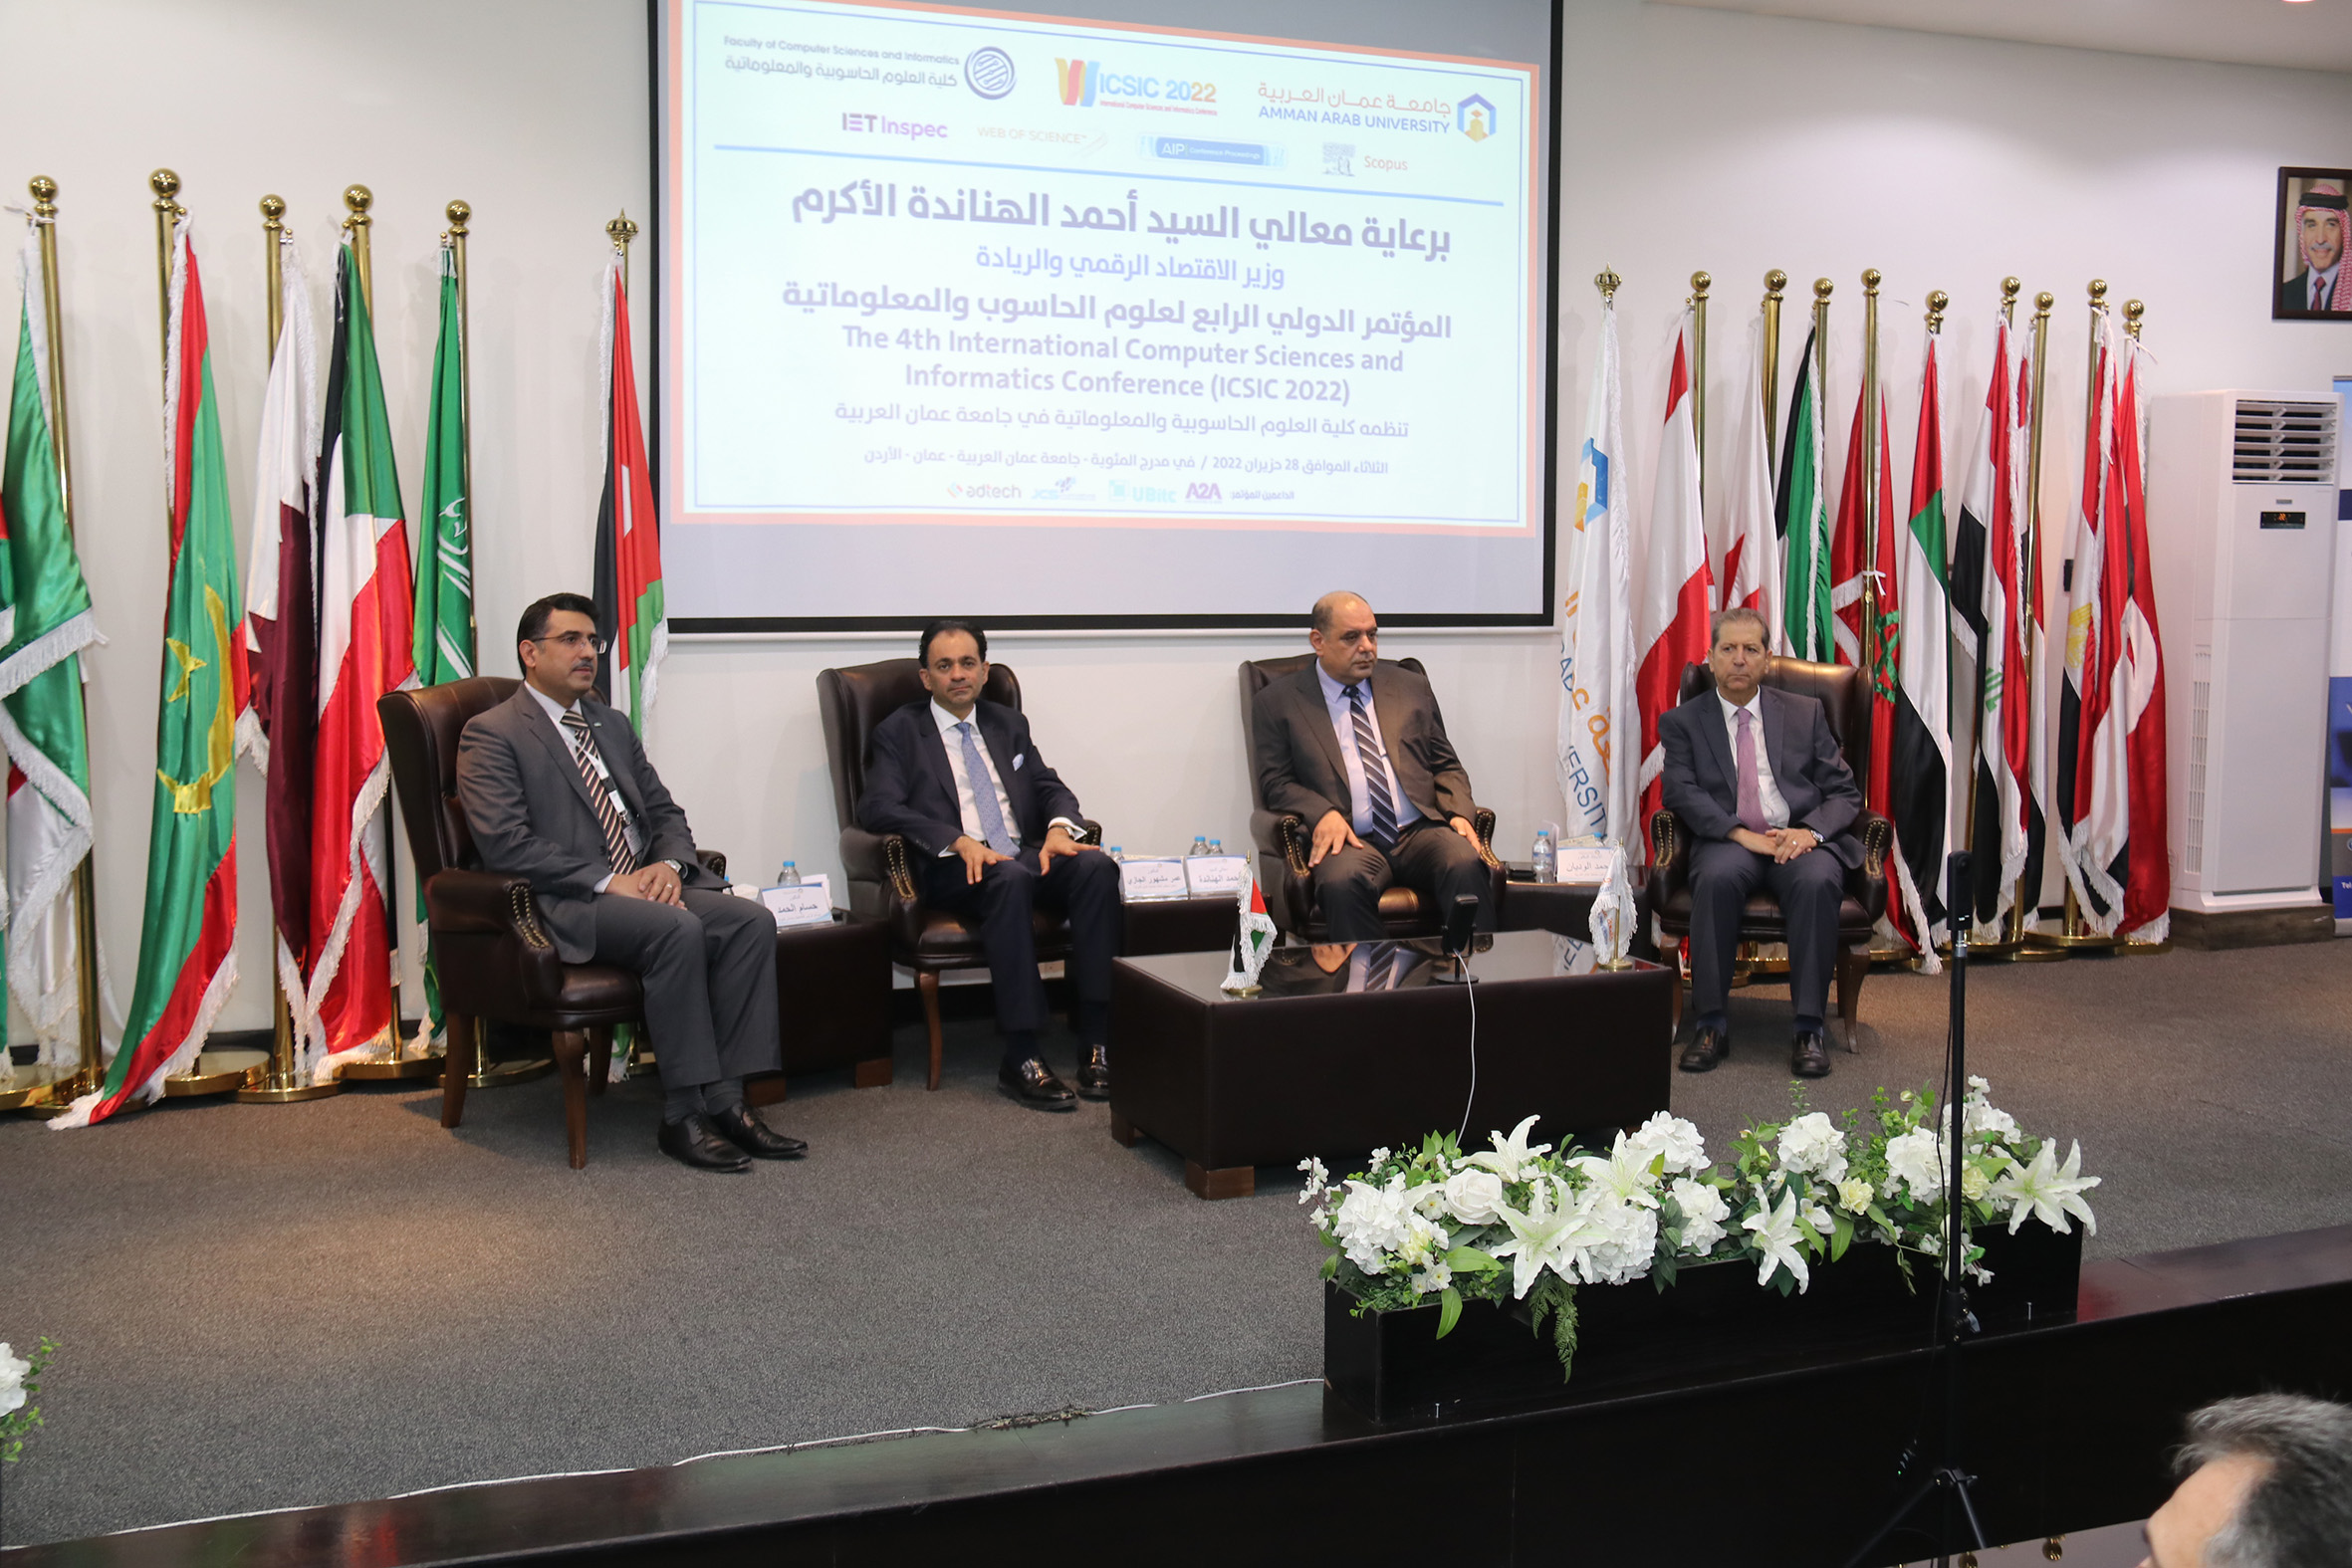 الهناندة يرعى افتتاح فعاليات المؤتمر الدولي الرابع في العلوم الحاسوبية والمعلوماتية في "عمان العربية"3